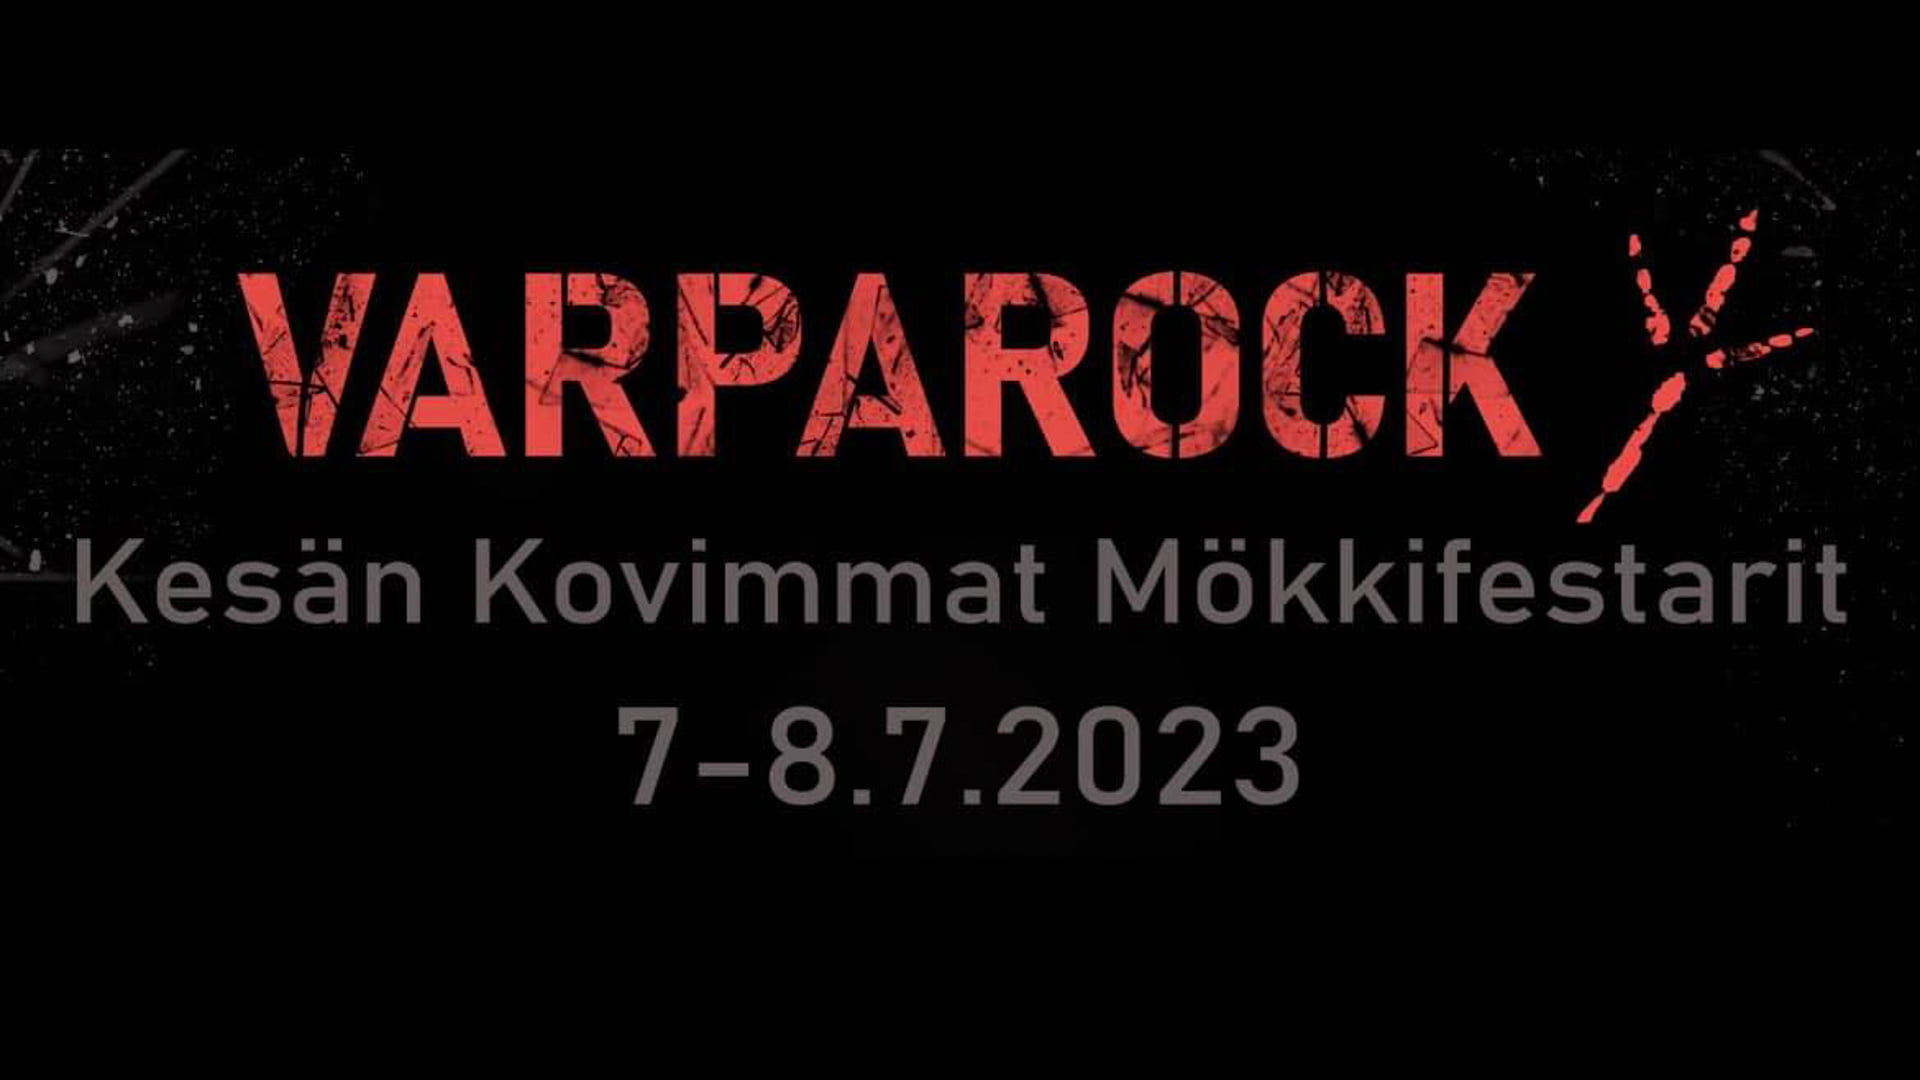 Varparock